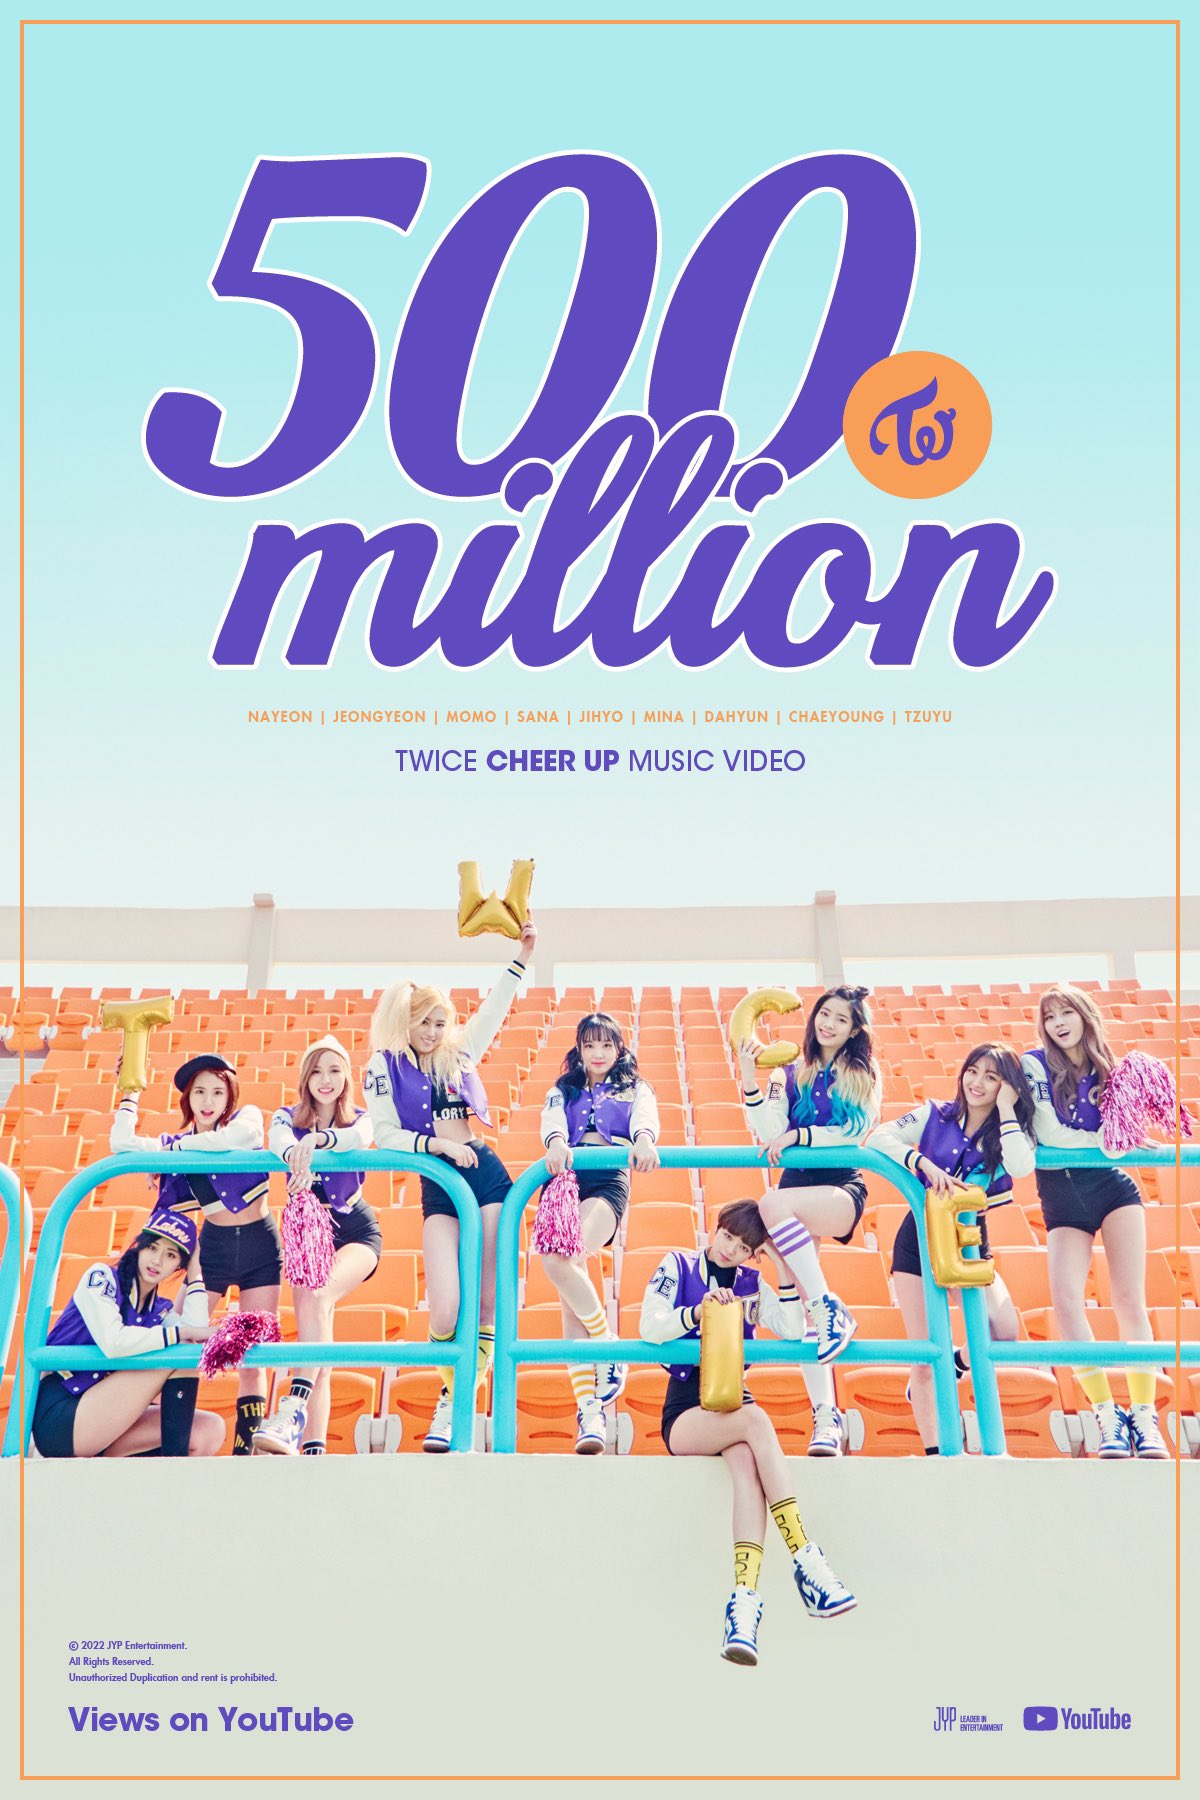 Poster chúc mừng MV “CHEER UP” của Twice đạt được cột mốc 500 triệu lượt xem trên Youtube. Ảnh: Twitter